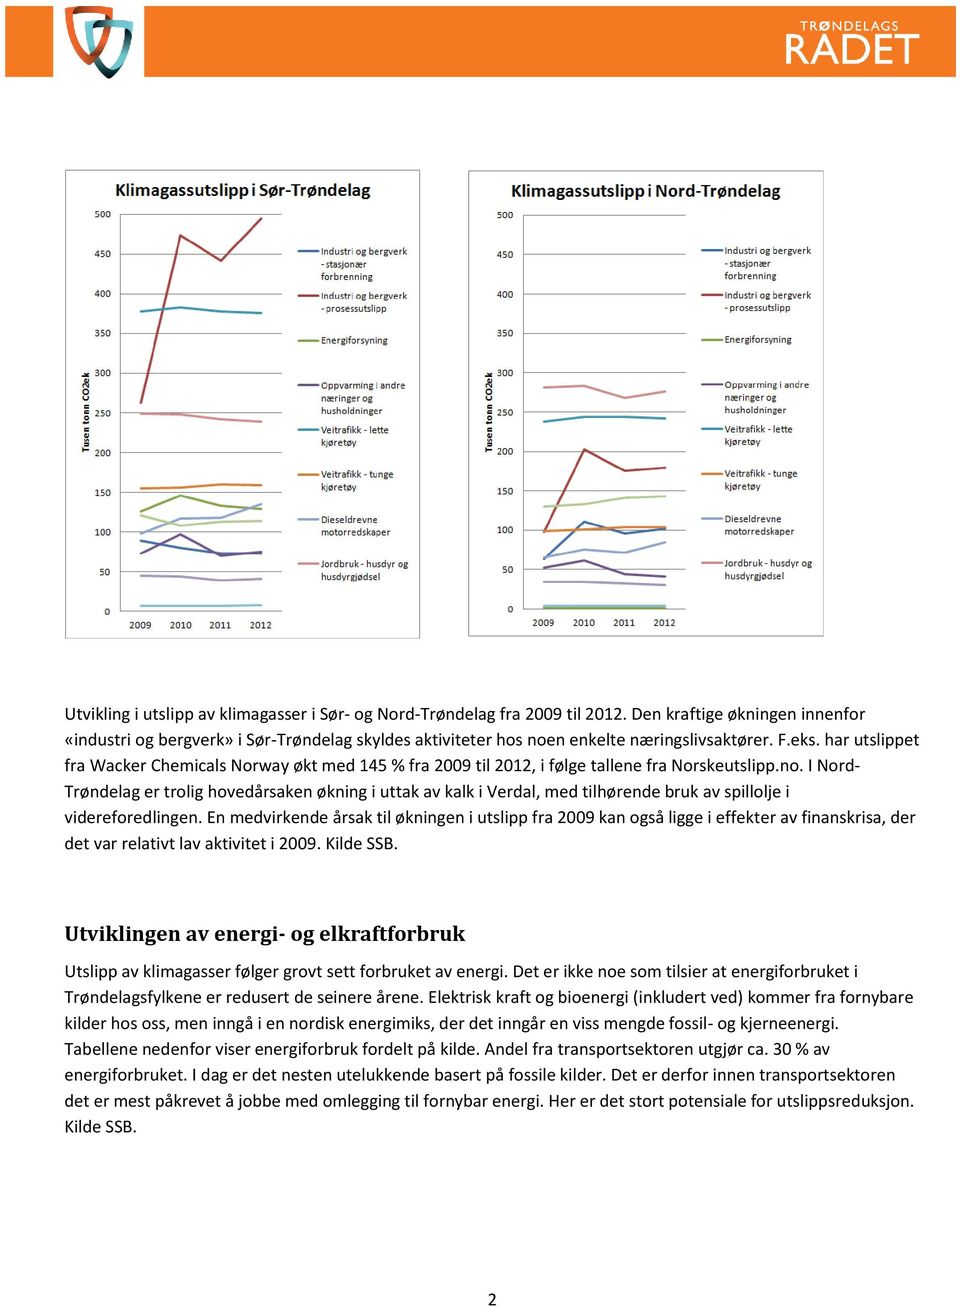 har utslippet fra Wacker Chemicals Norway økt med 145 % fra 2009 til 2012, i følge tallene fra Norskeutslipp.no.